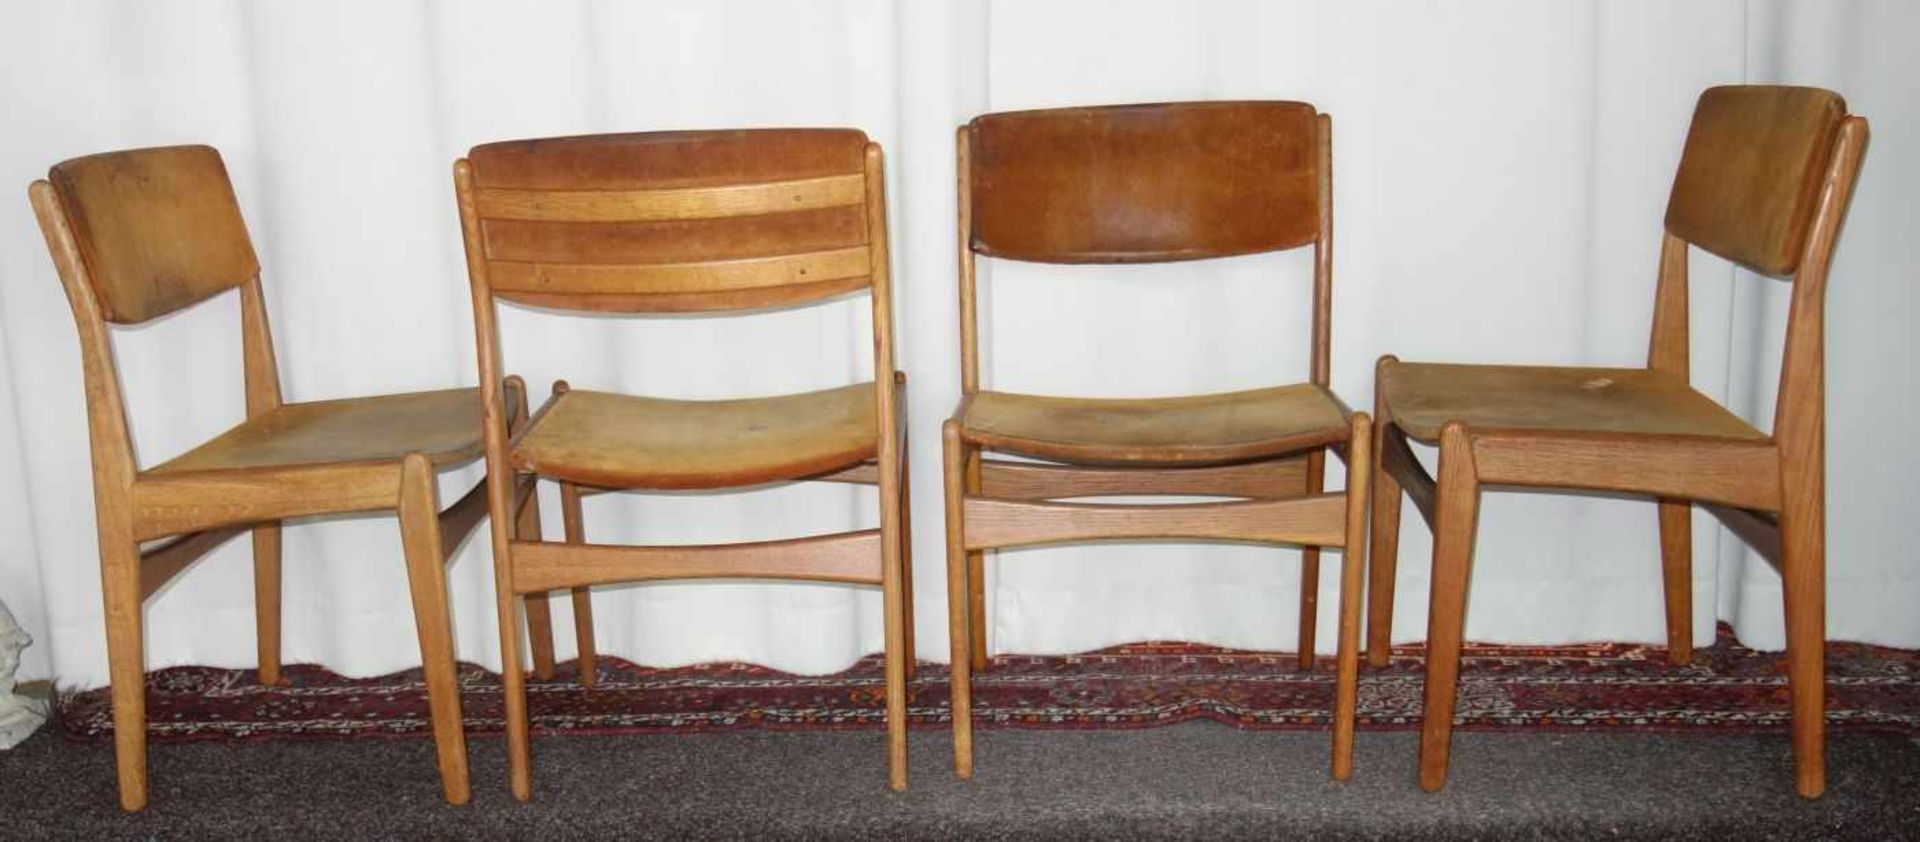 4 STÜHLE / ESSZIMMERSTÜHLE / chairs, dänisches Mid Century Design, 1960er Jahre, Frem Röjle / - Bild 4 aus 4